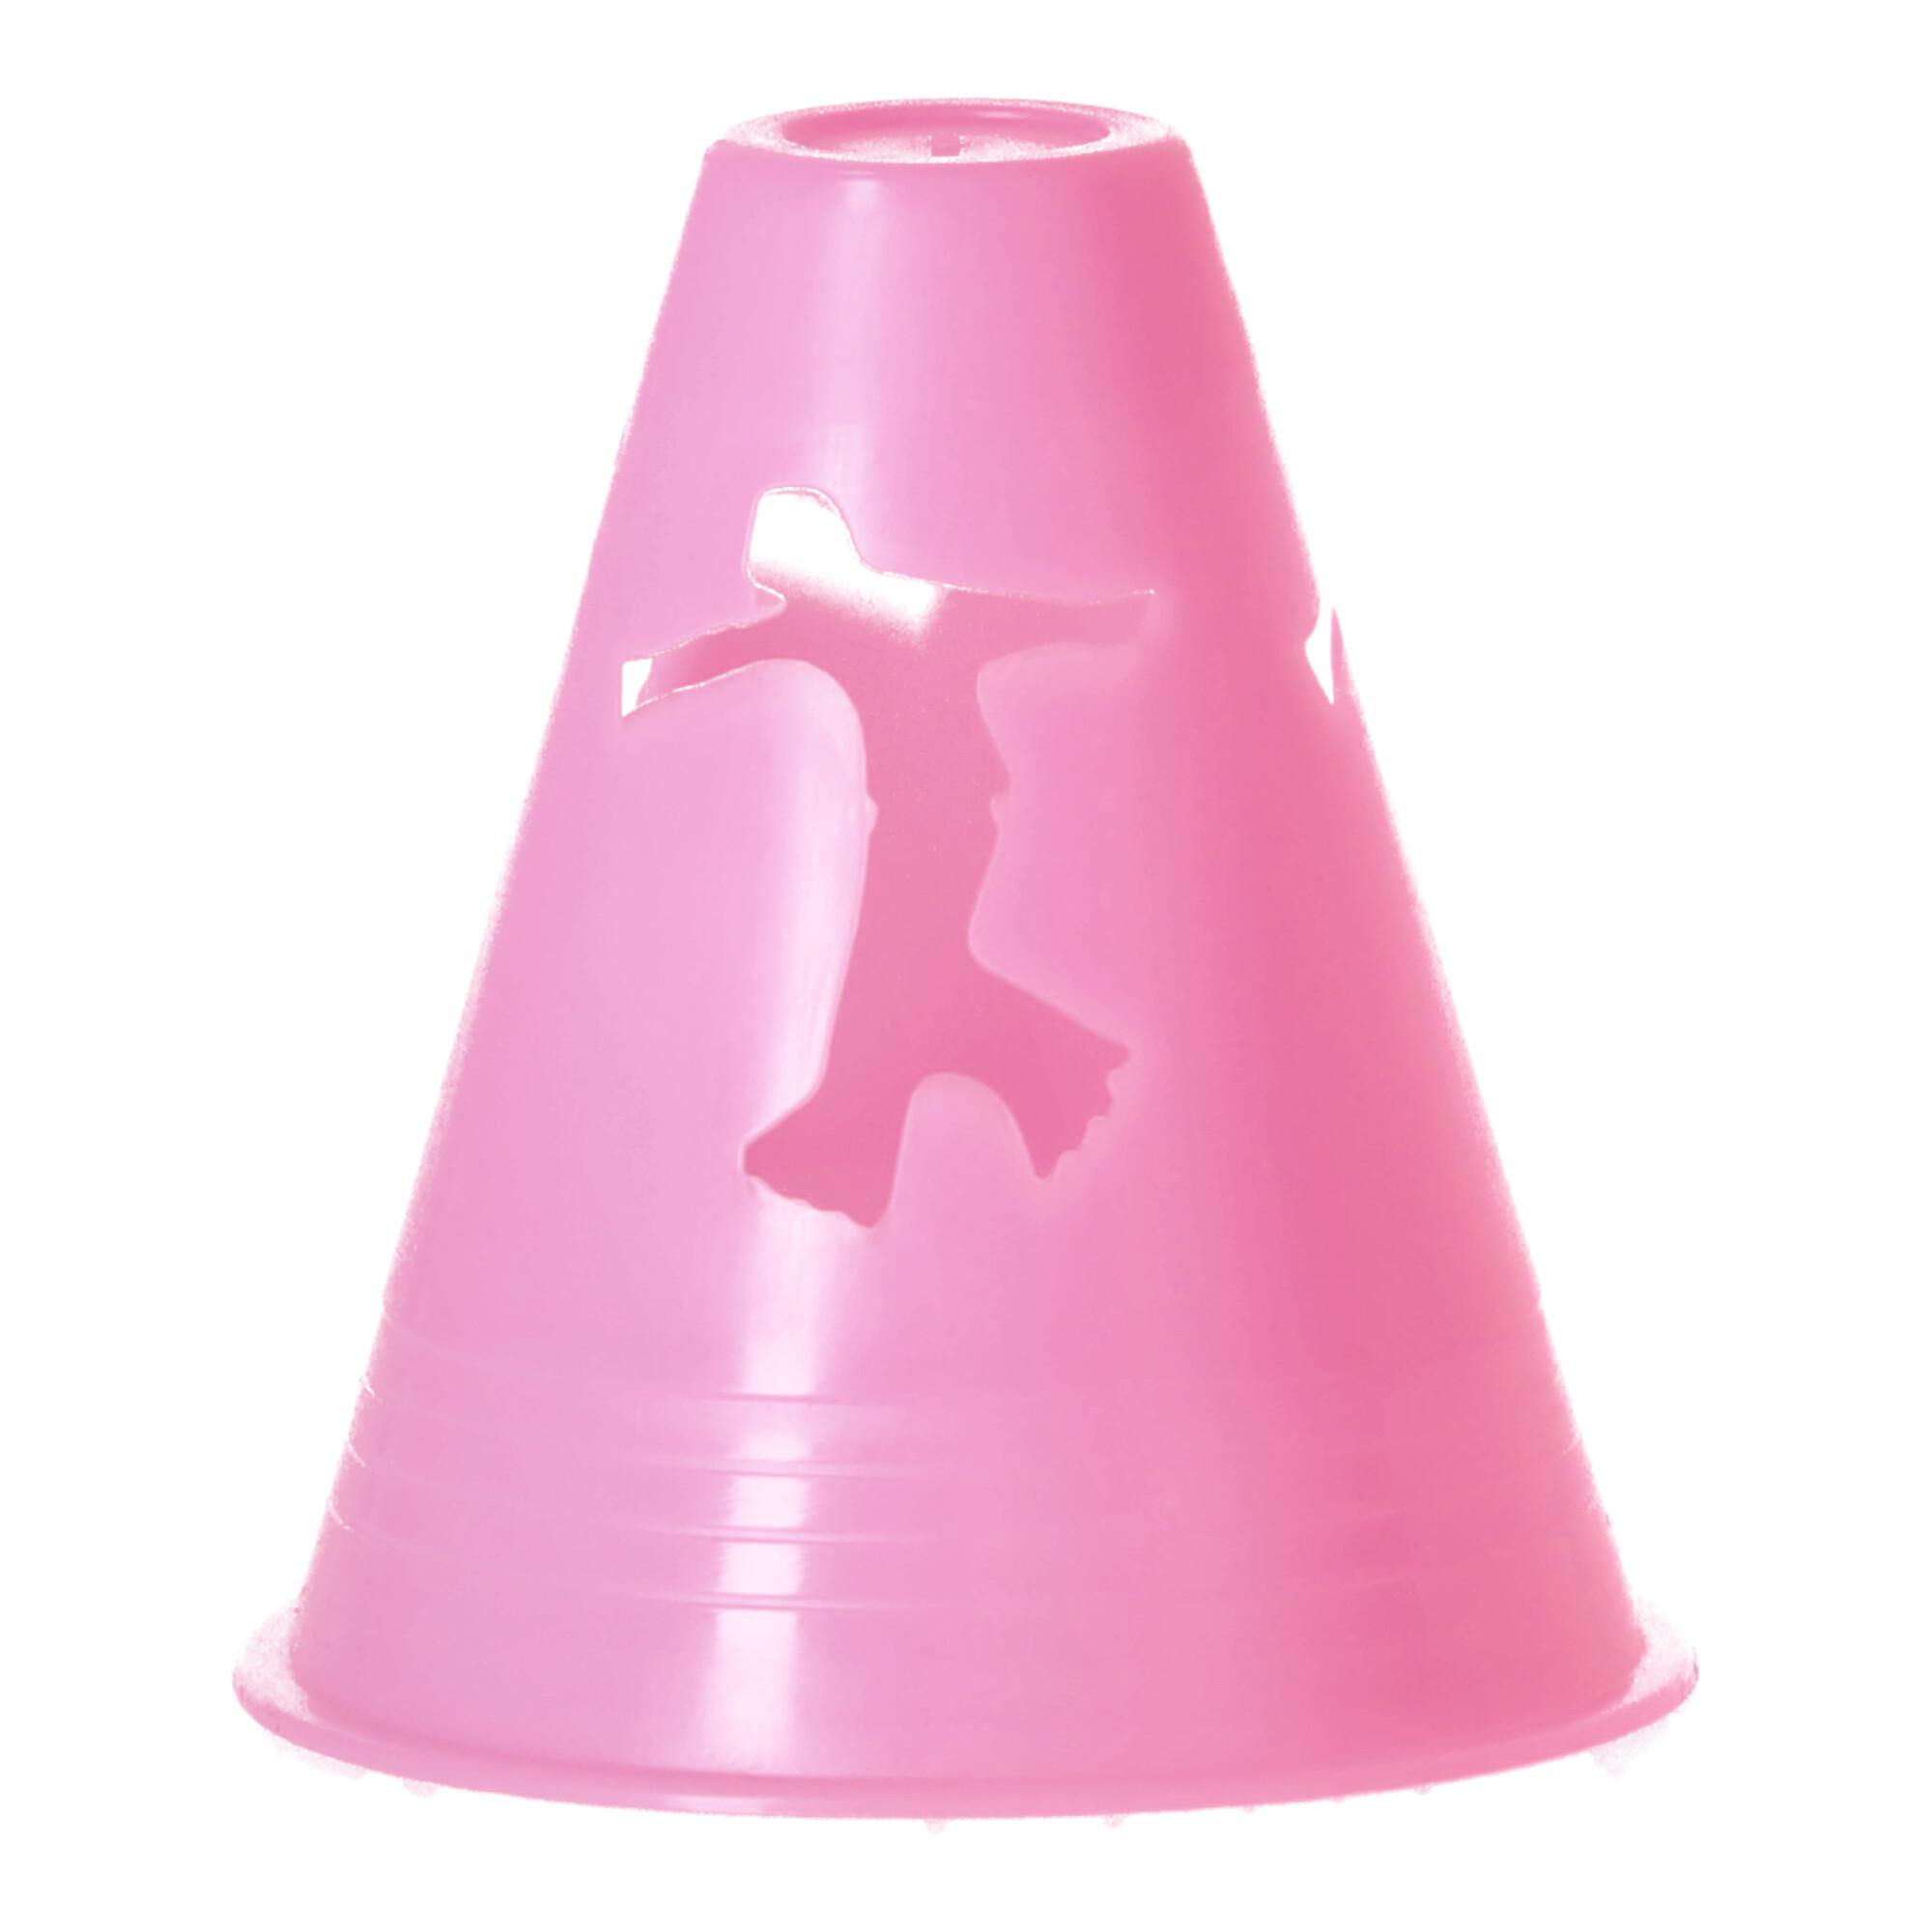 Slalom cones - pink